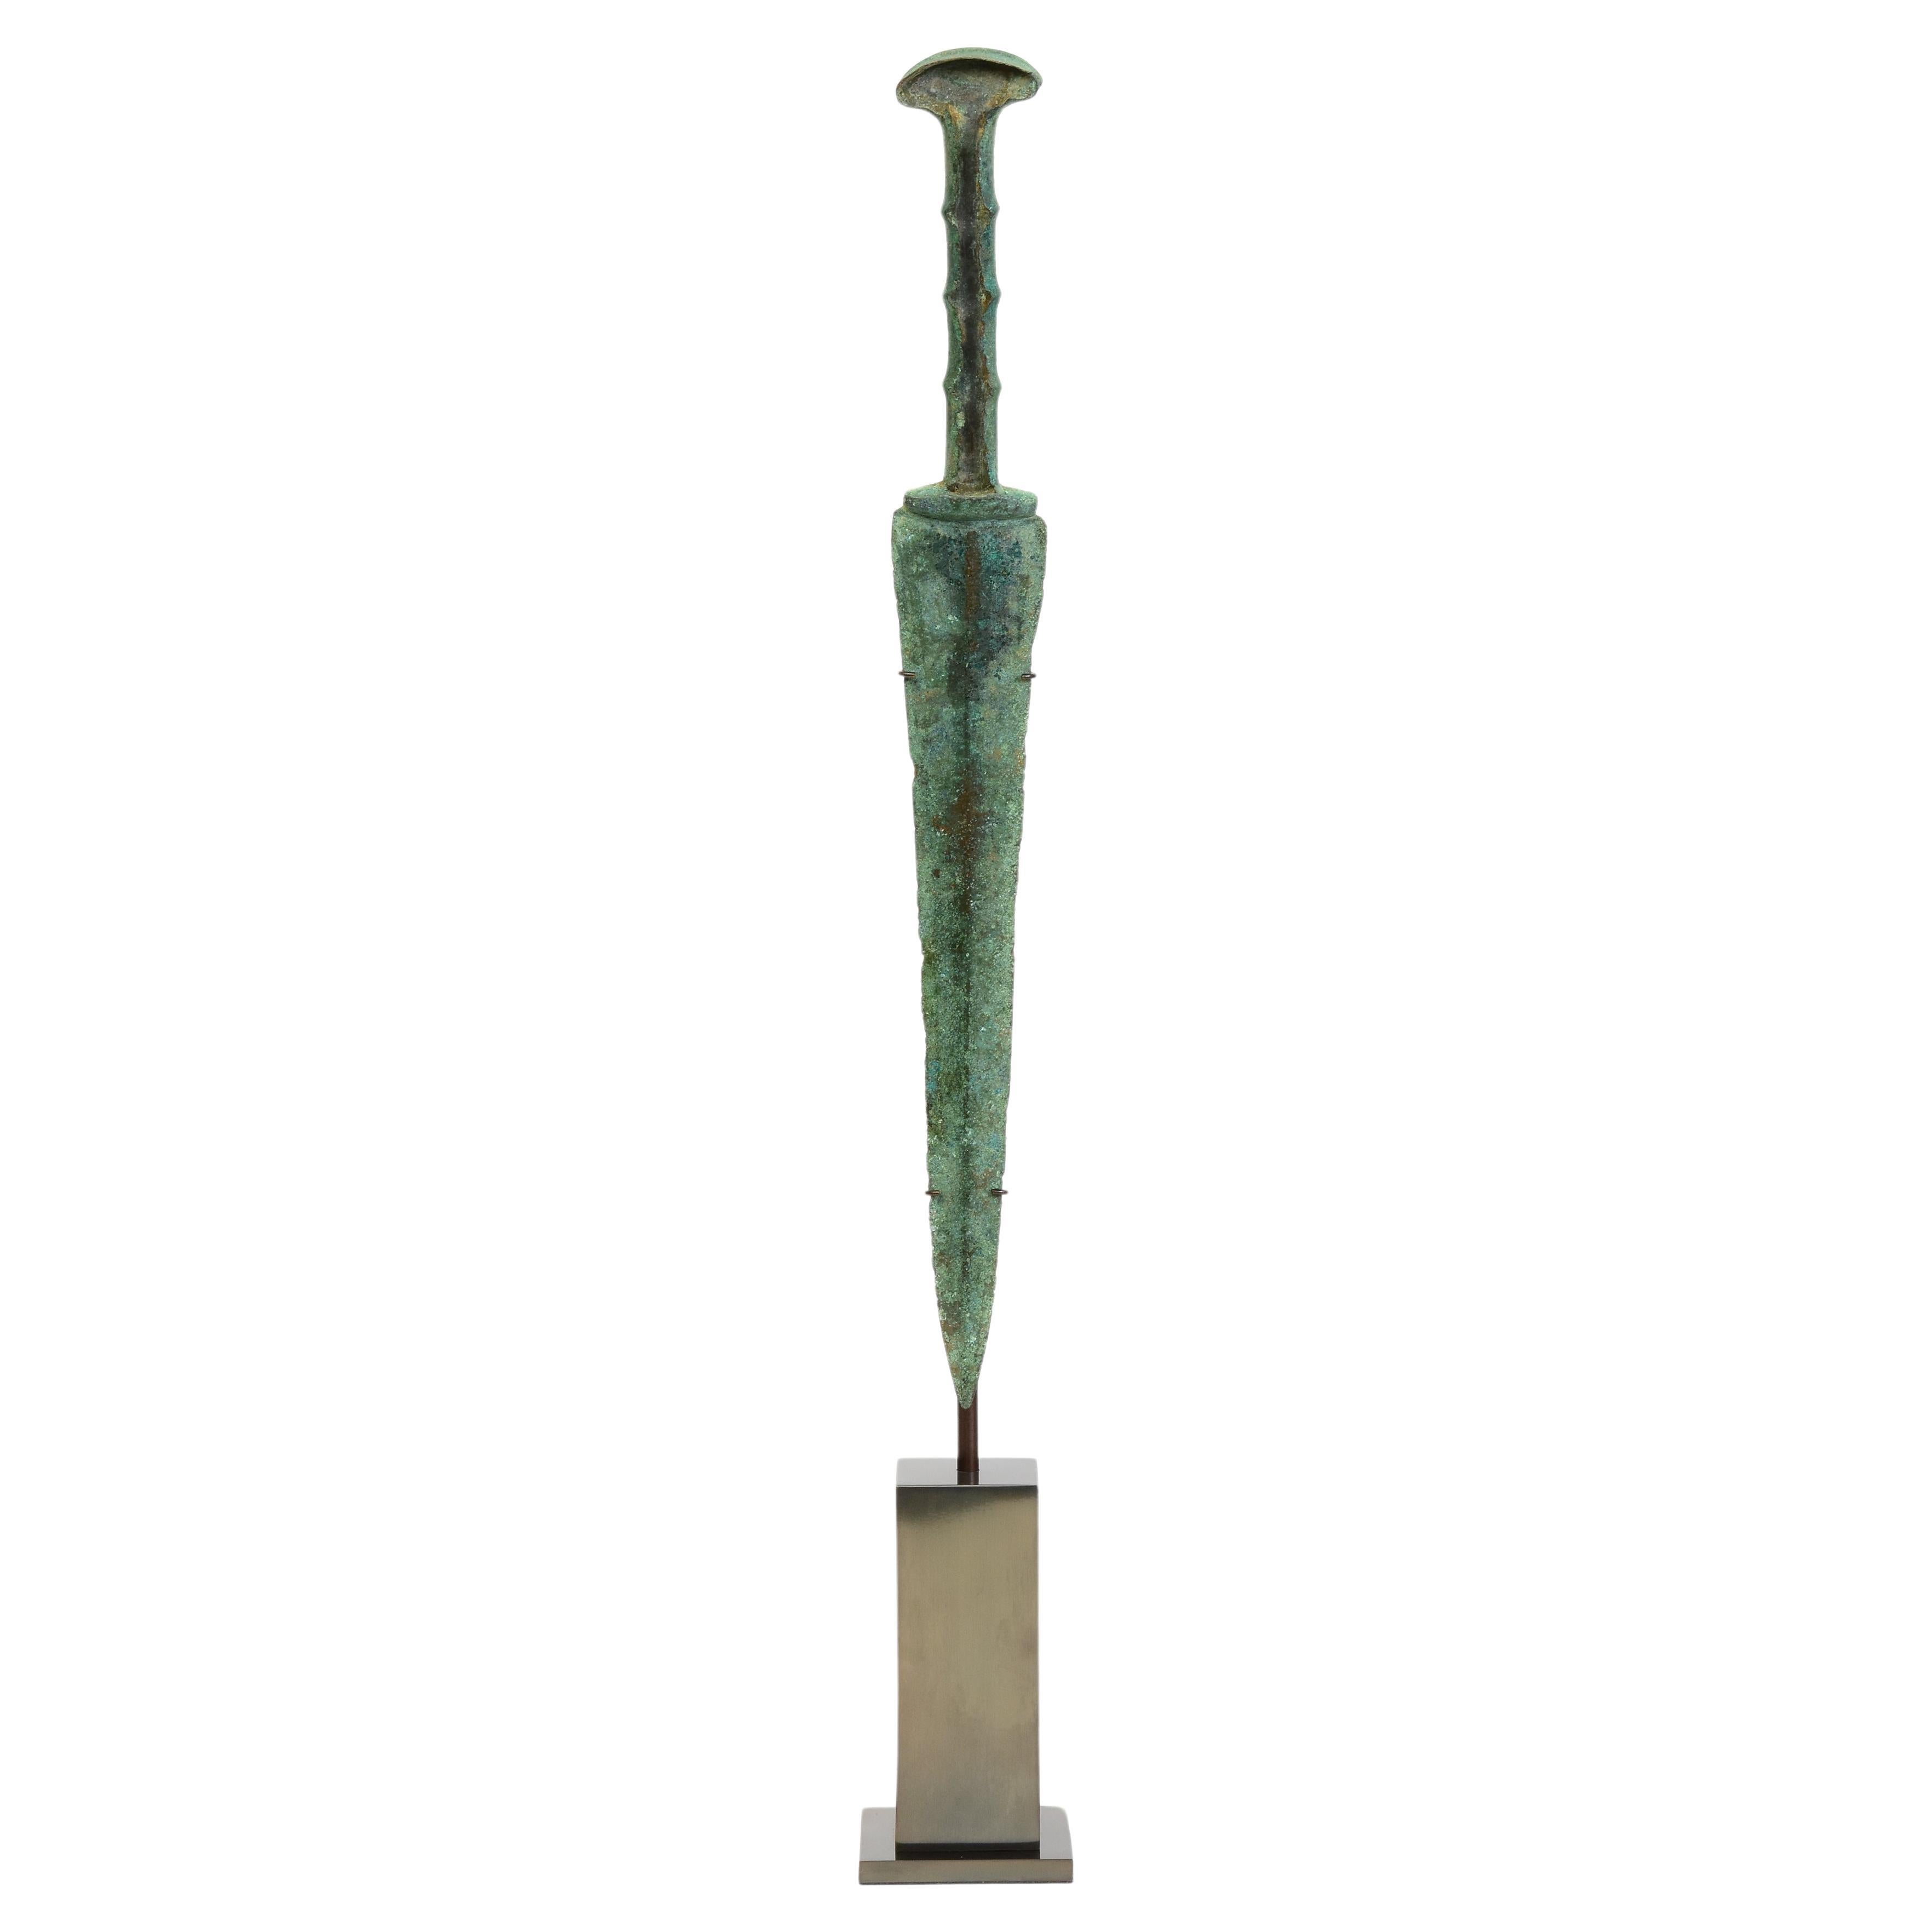 Ancienne épée / couteau / tisserand de l'ère du fer ancien Luristan en bronze